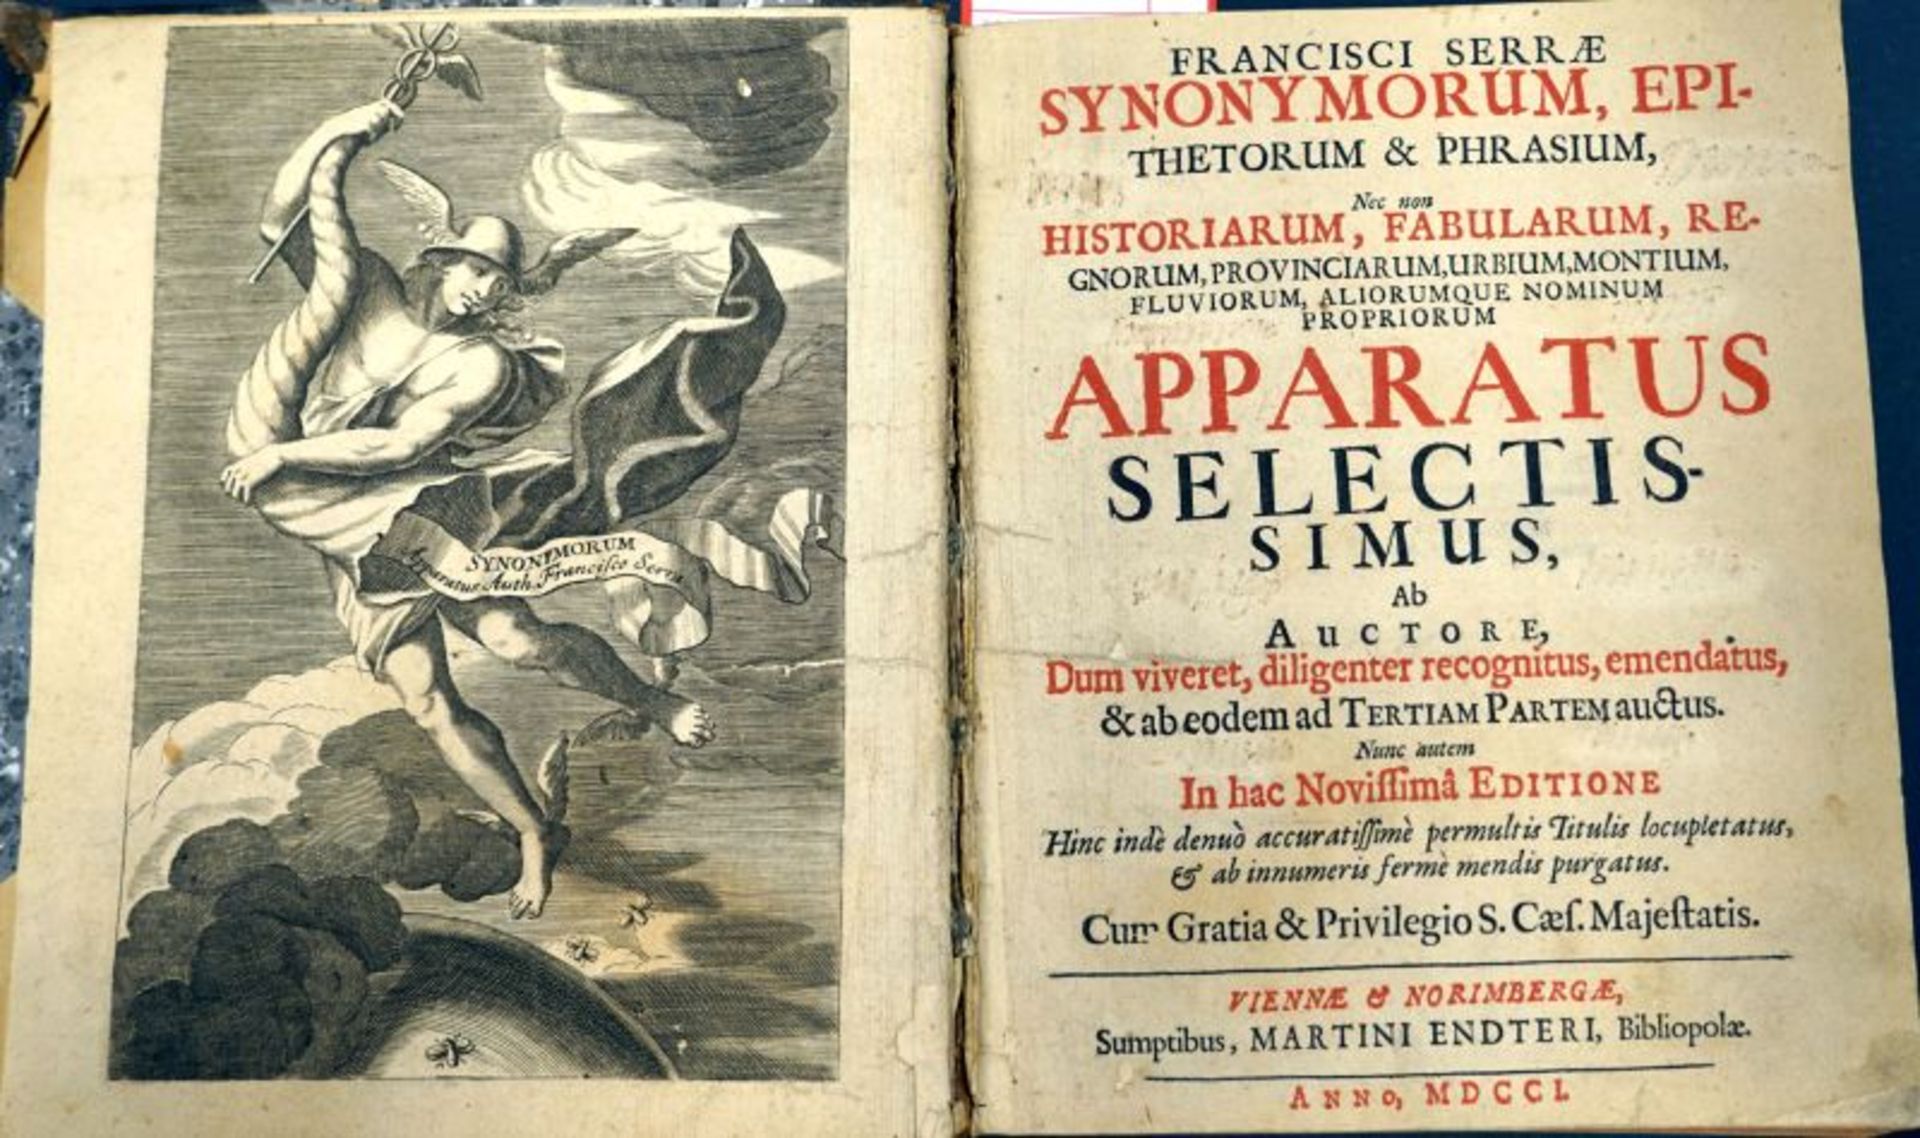 Serra, Francisco: Synonymorum, epithetorum & phrasium